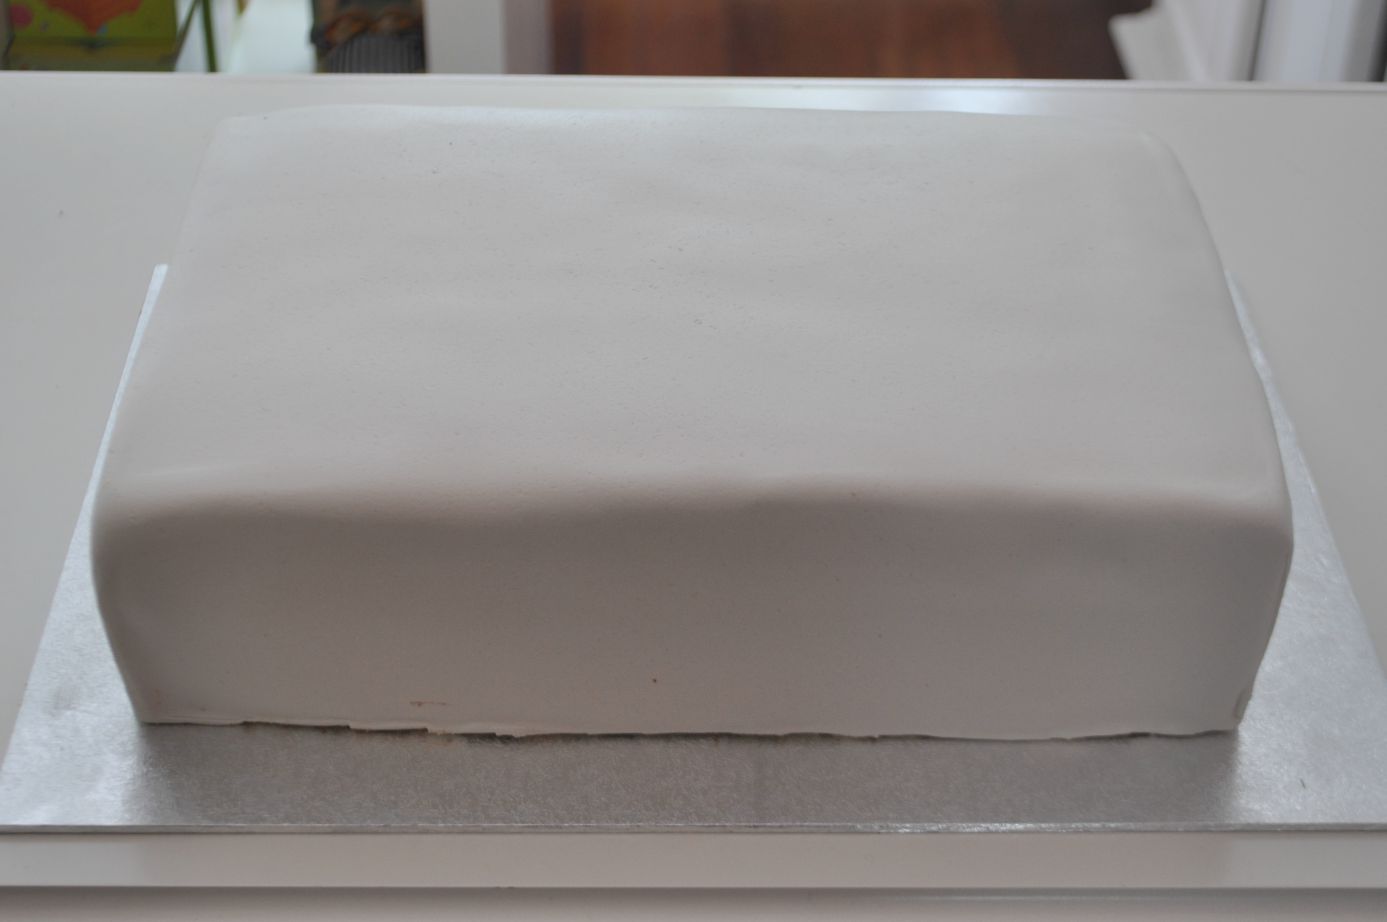 struik Boekhouder Brig Vierkante taart bekleden met The Mat – Liefde voor bakken